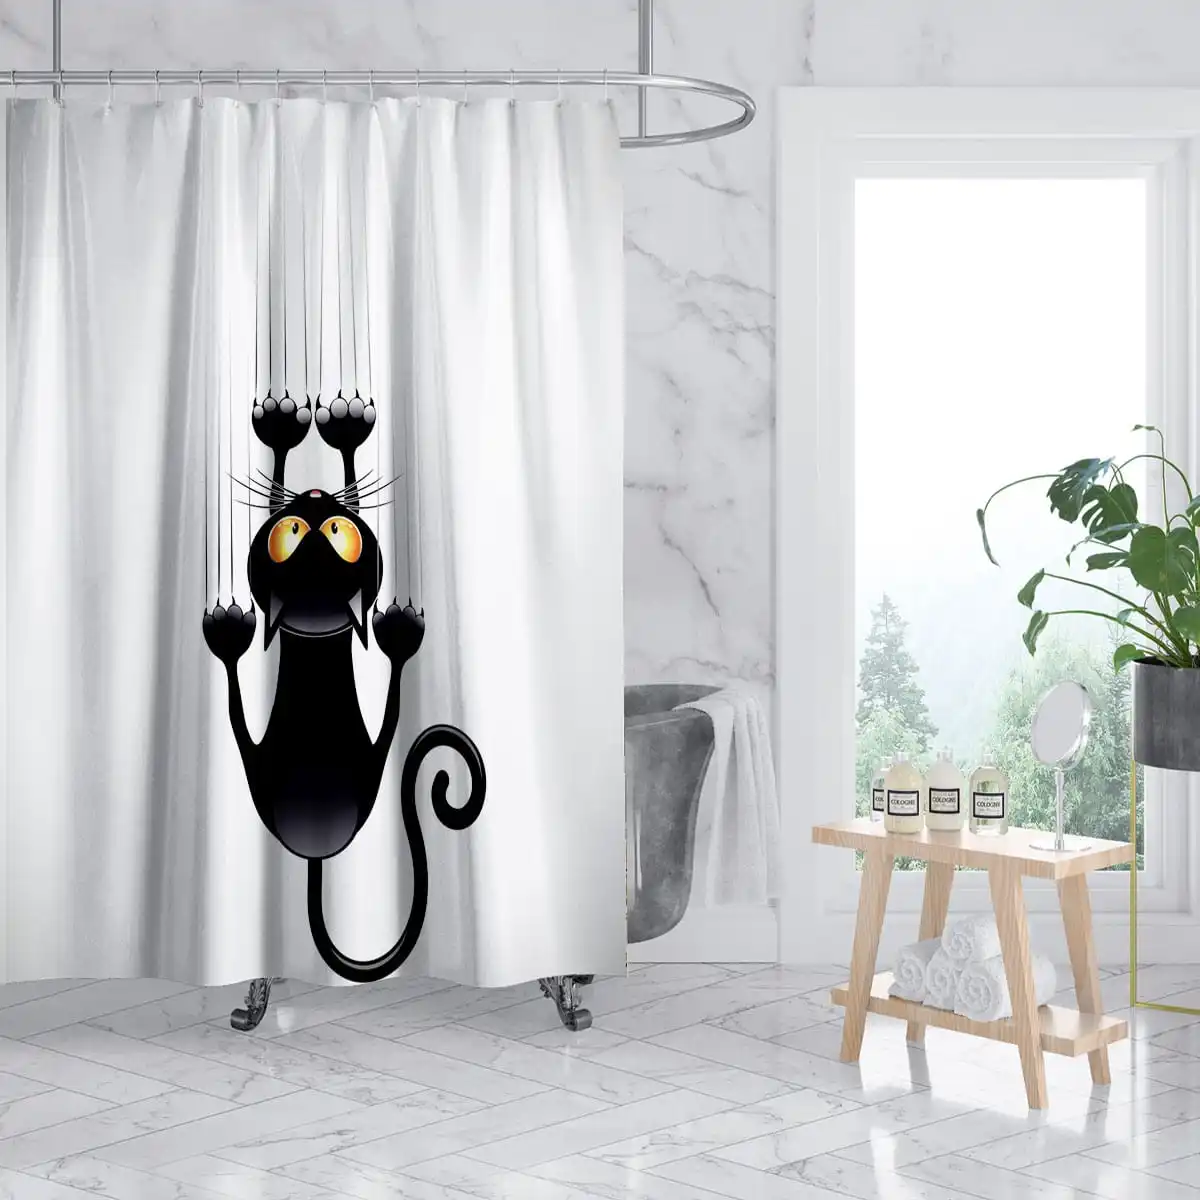 

Занавеска для душа с мультяшными кошками, детская штора из полиэстера, с крючками, с рисунком животного, черная белая, домашний декор